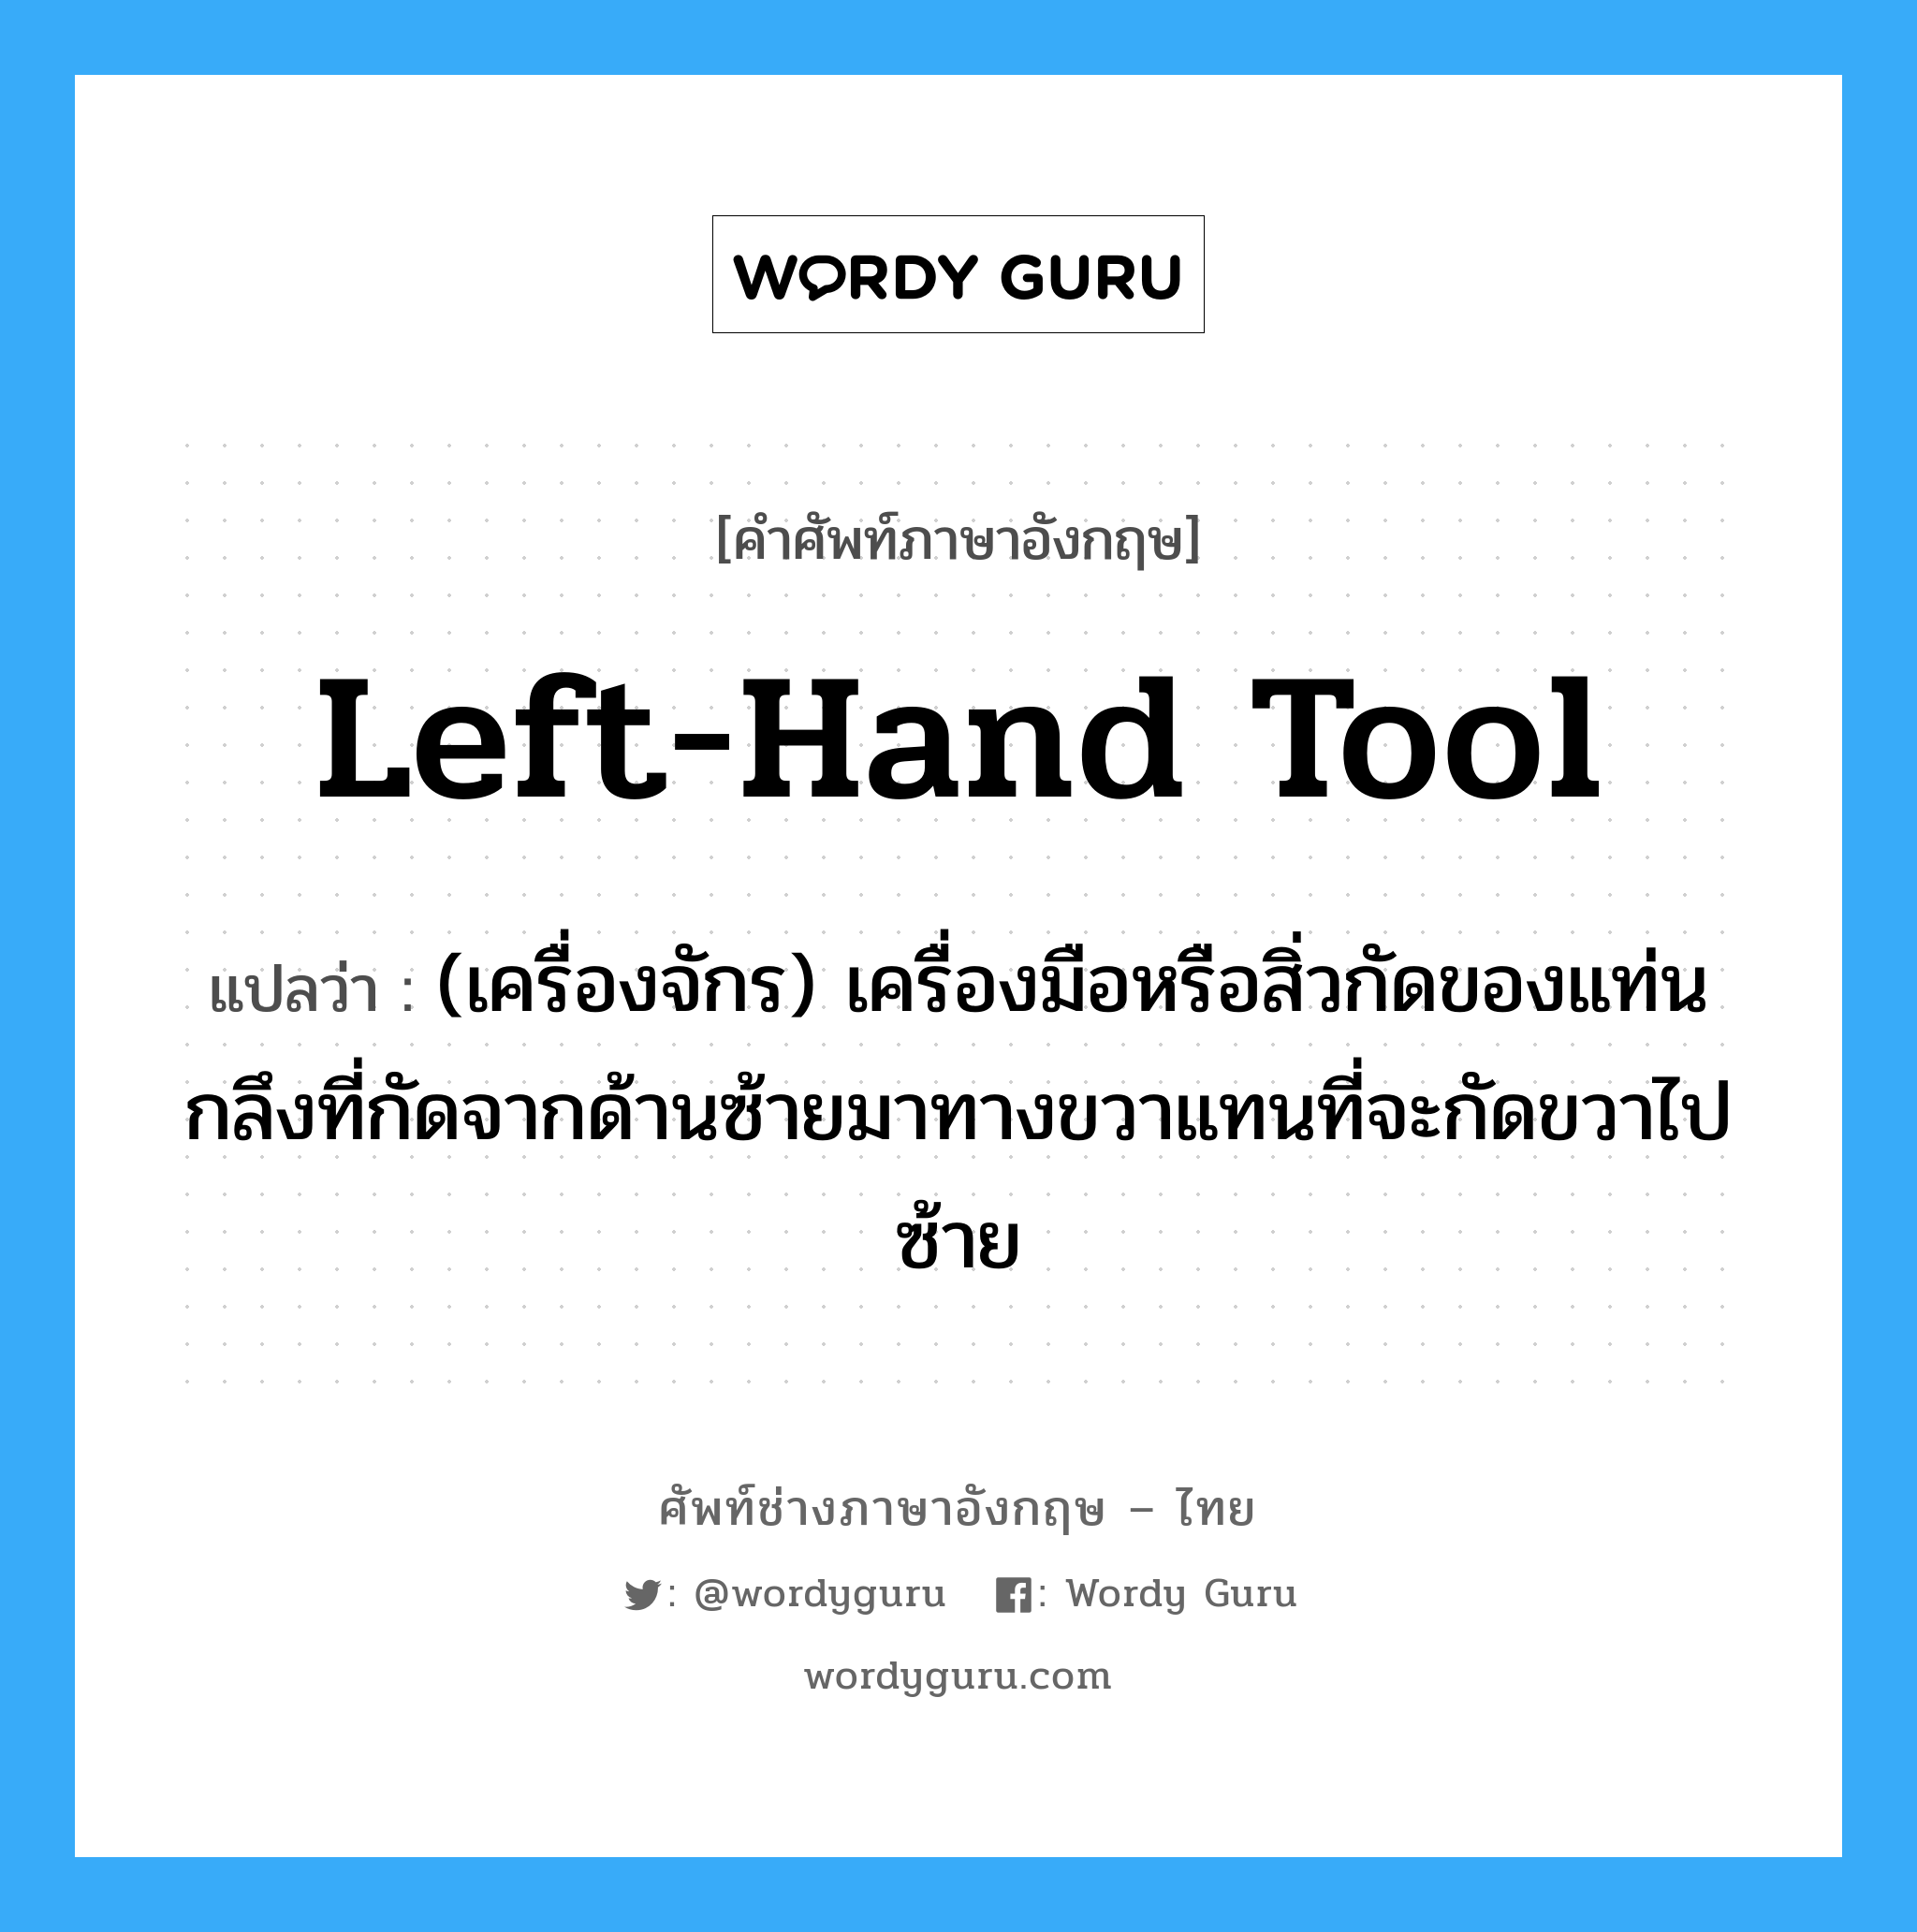 left-hand tool แปลว่า?, คำศัพท์ช่างภาษาอังกฤษ - ไทย left-hand tool คำศัพท์ภาษาอังกฤษ left-hand tool แปลว่า (เครื่องจักร) เครื่องมือหรือสิ่วกัดของแท่นกลึงที่กัดจากด้านซ้ายมาทางขวาแทนที่จะกัดขวาไปซ้าย